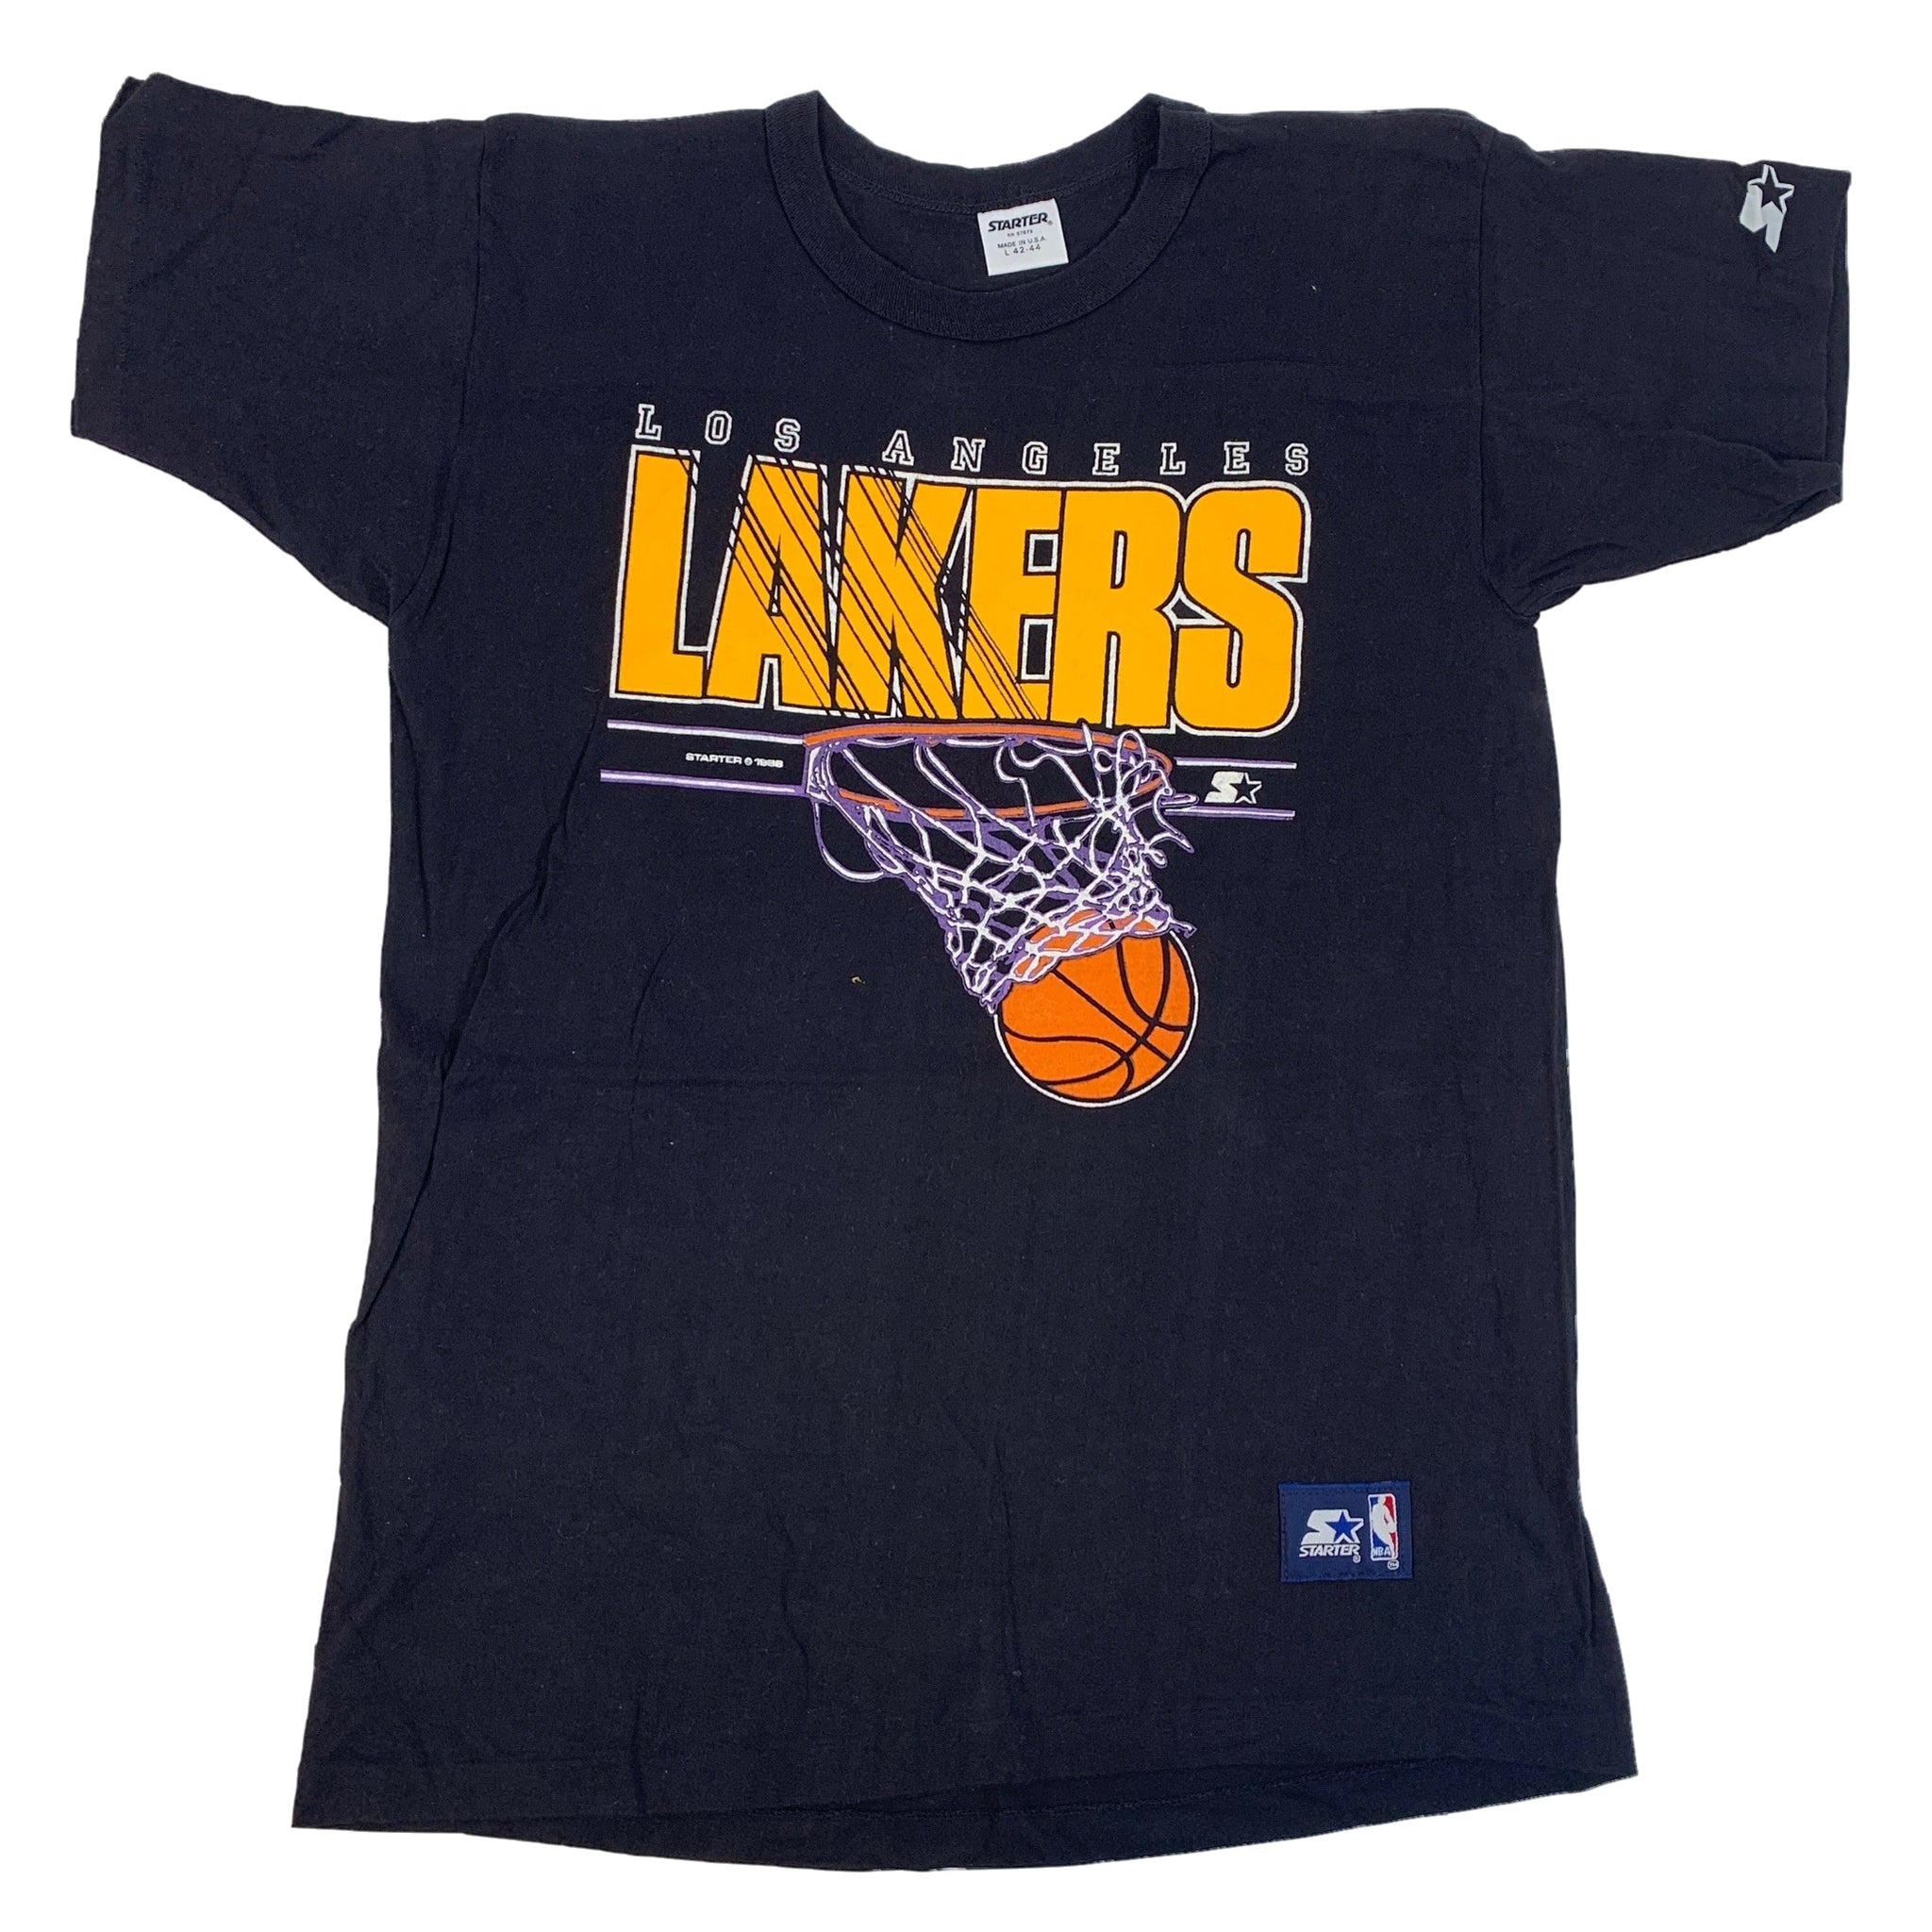 Los Angeles Lakers Vintage Apparel